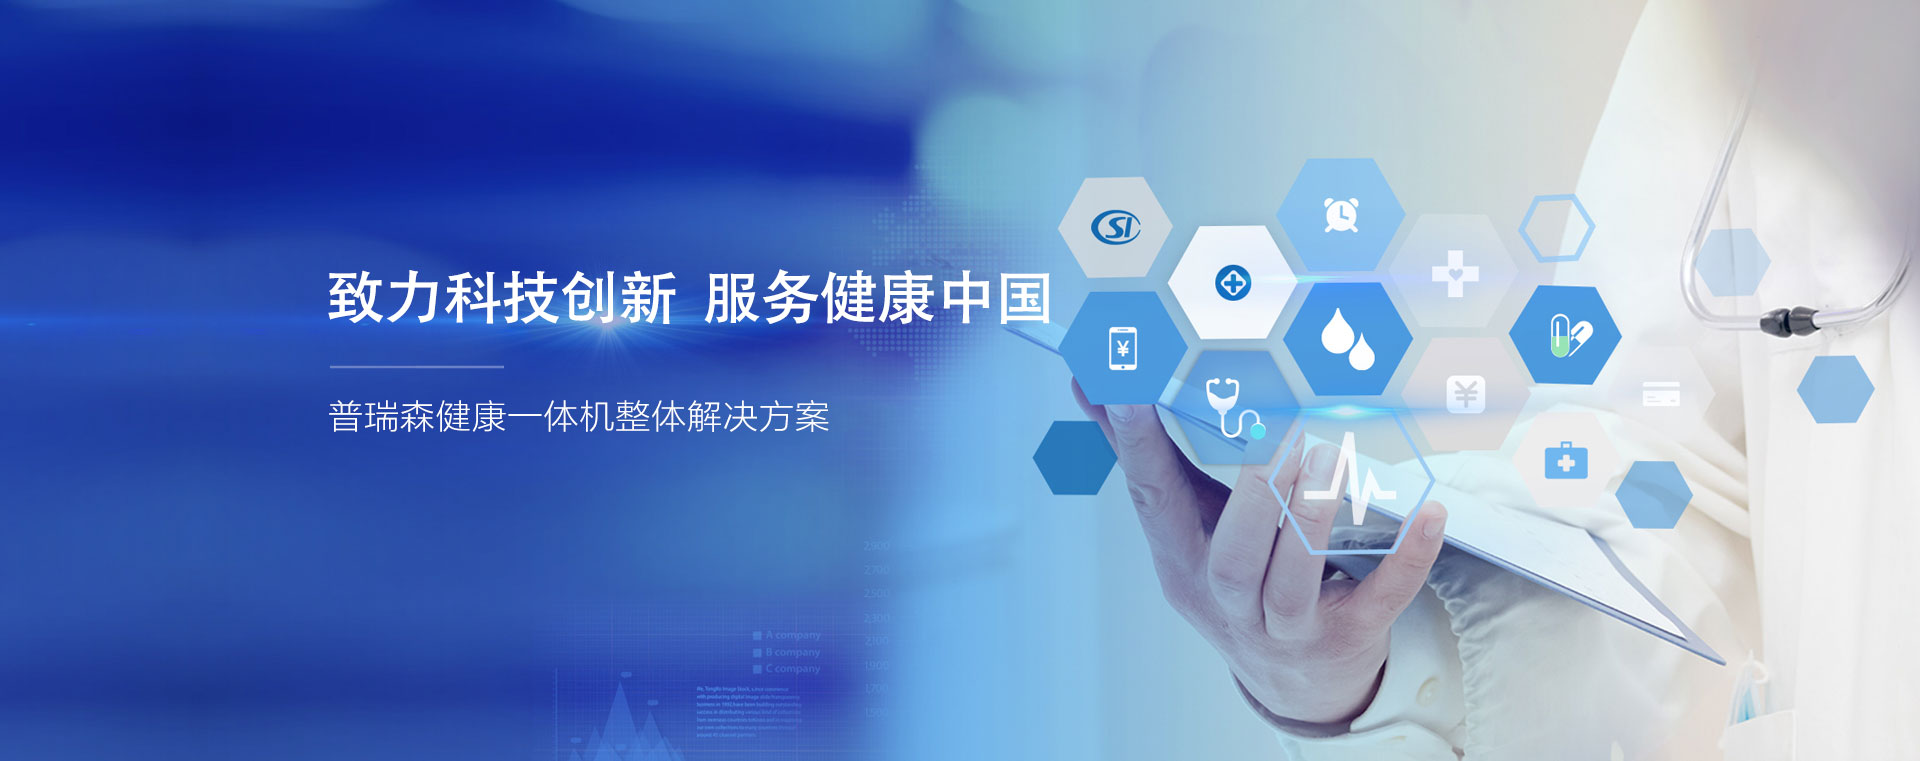 致力科技创新 服务健康中国、普瑞森健康一体机整体解决方案